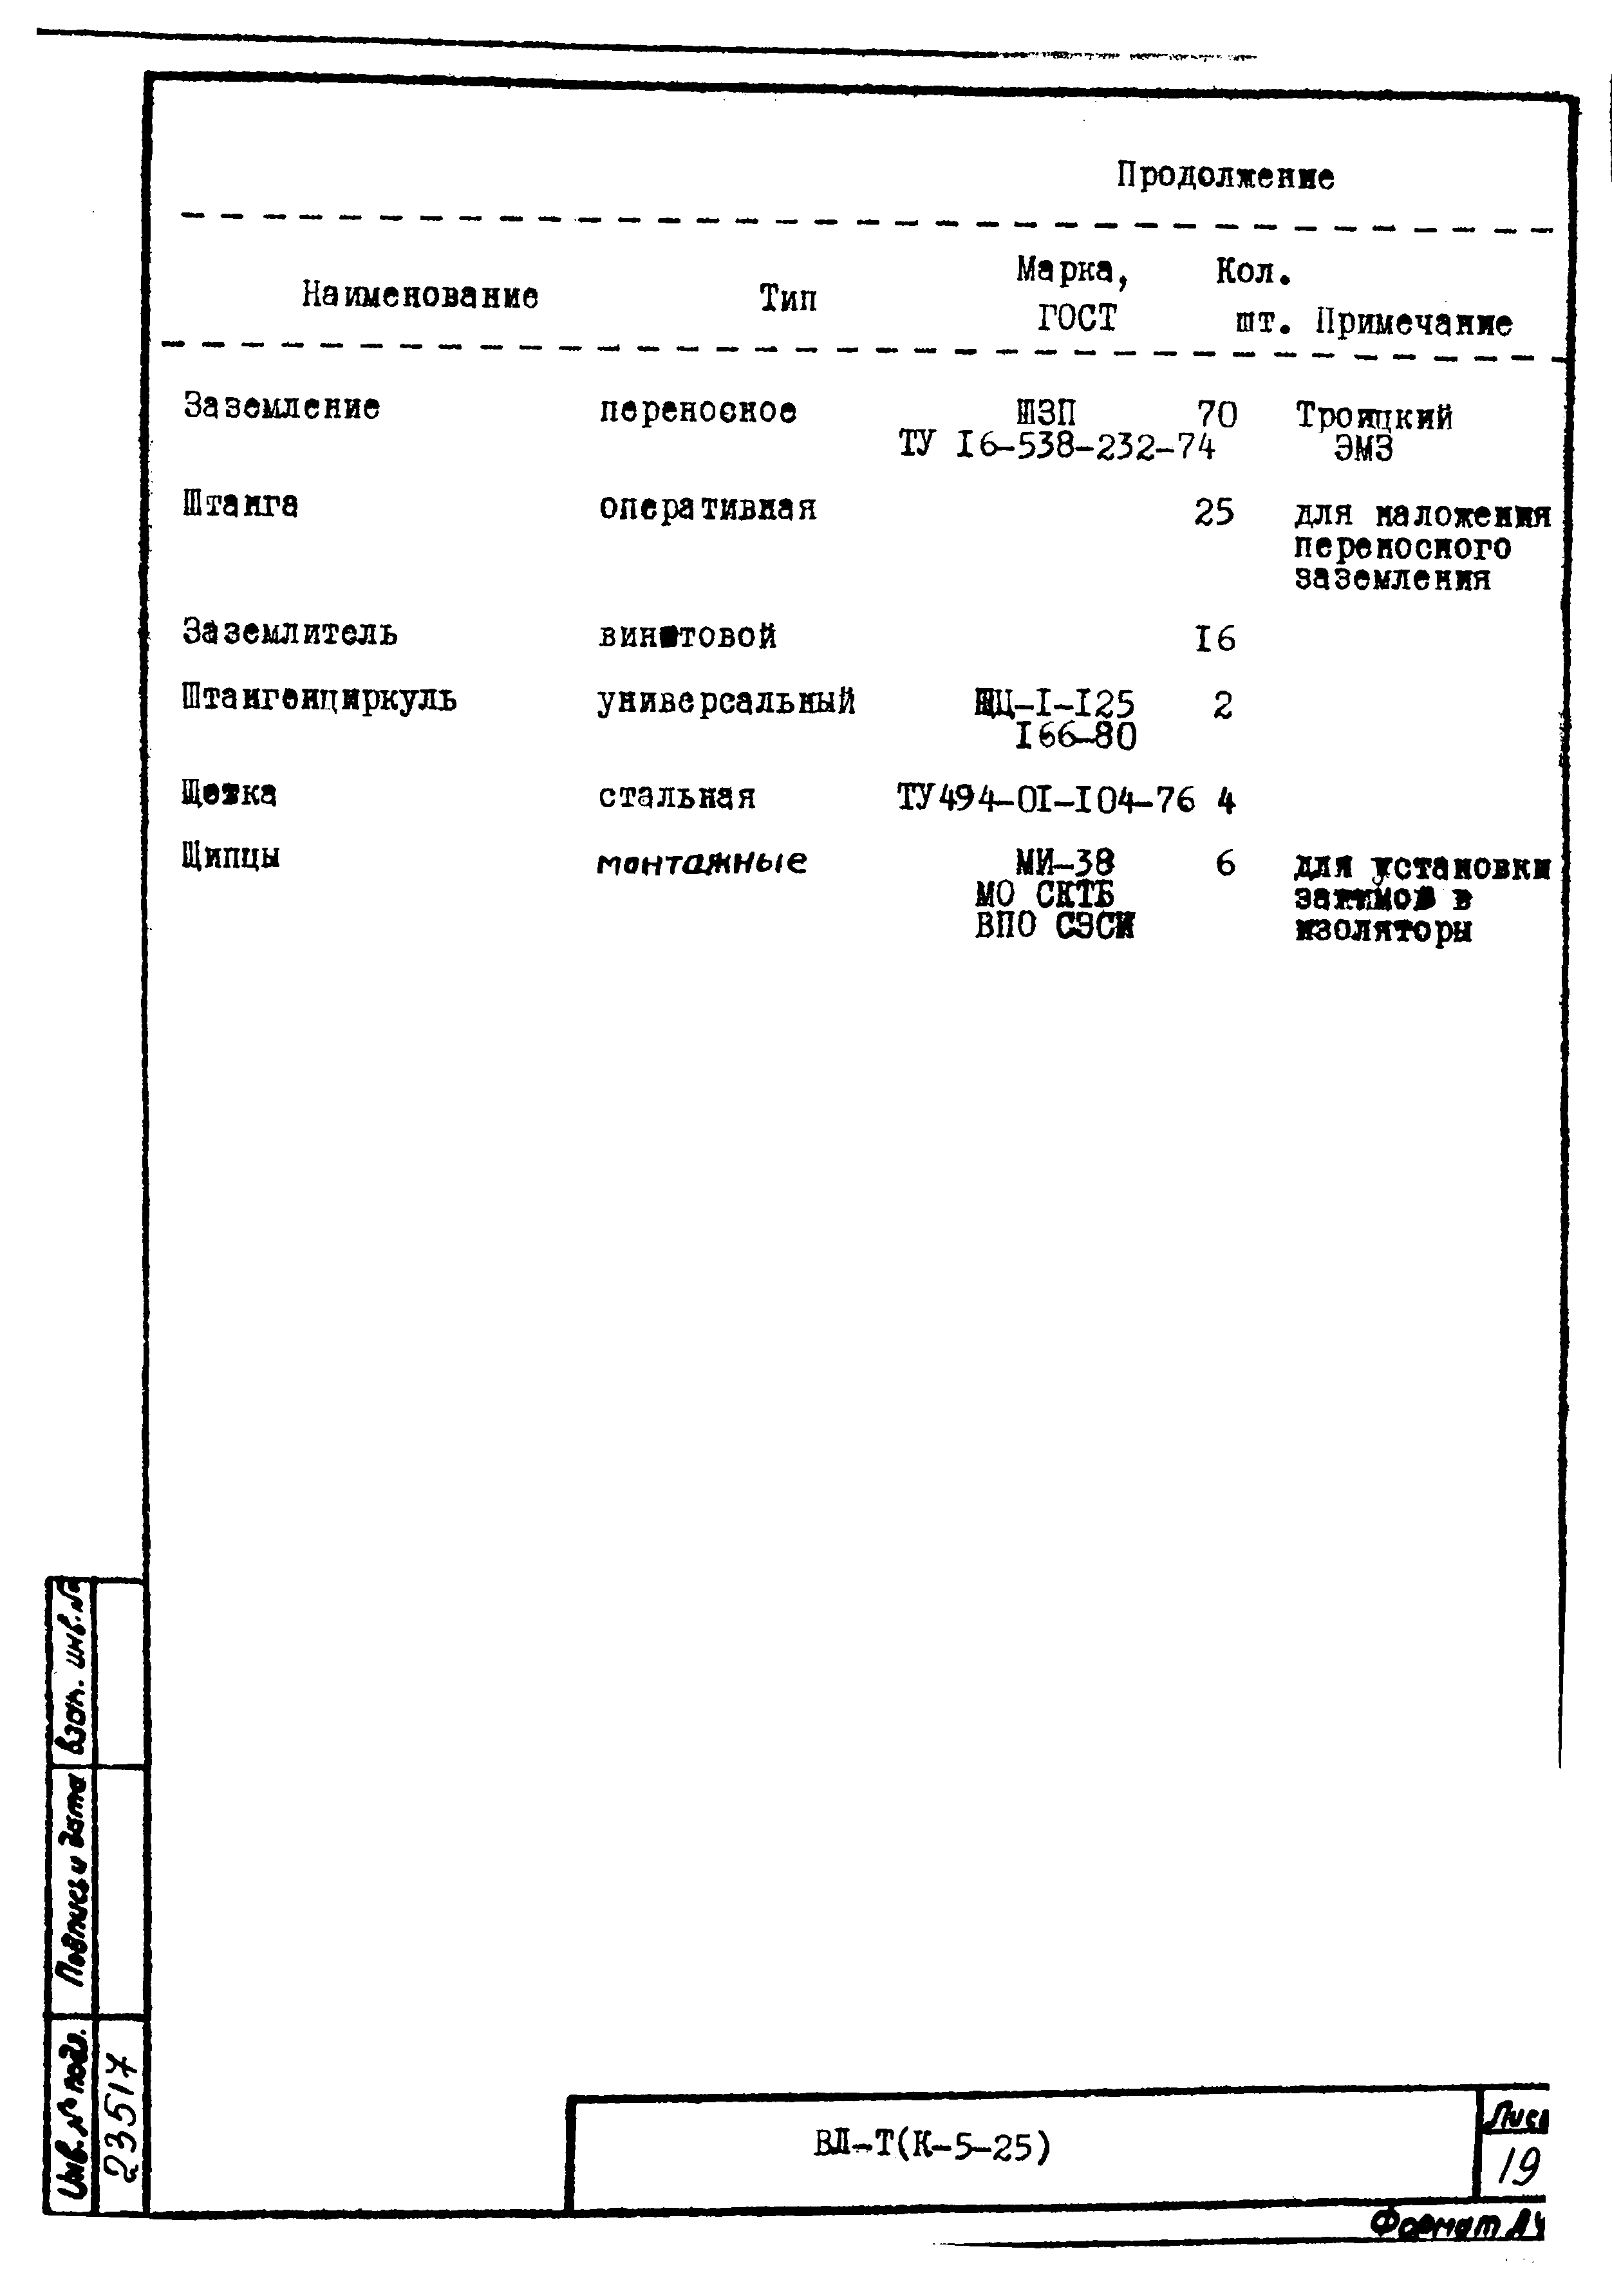 Технологическая карта К-5-25-28